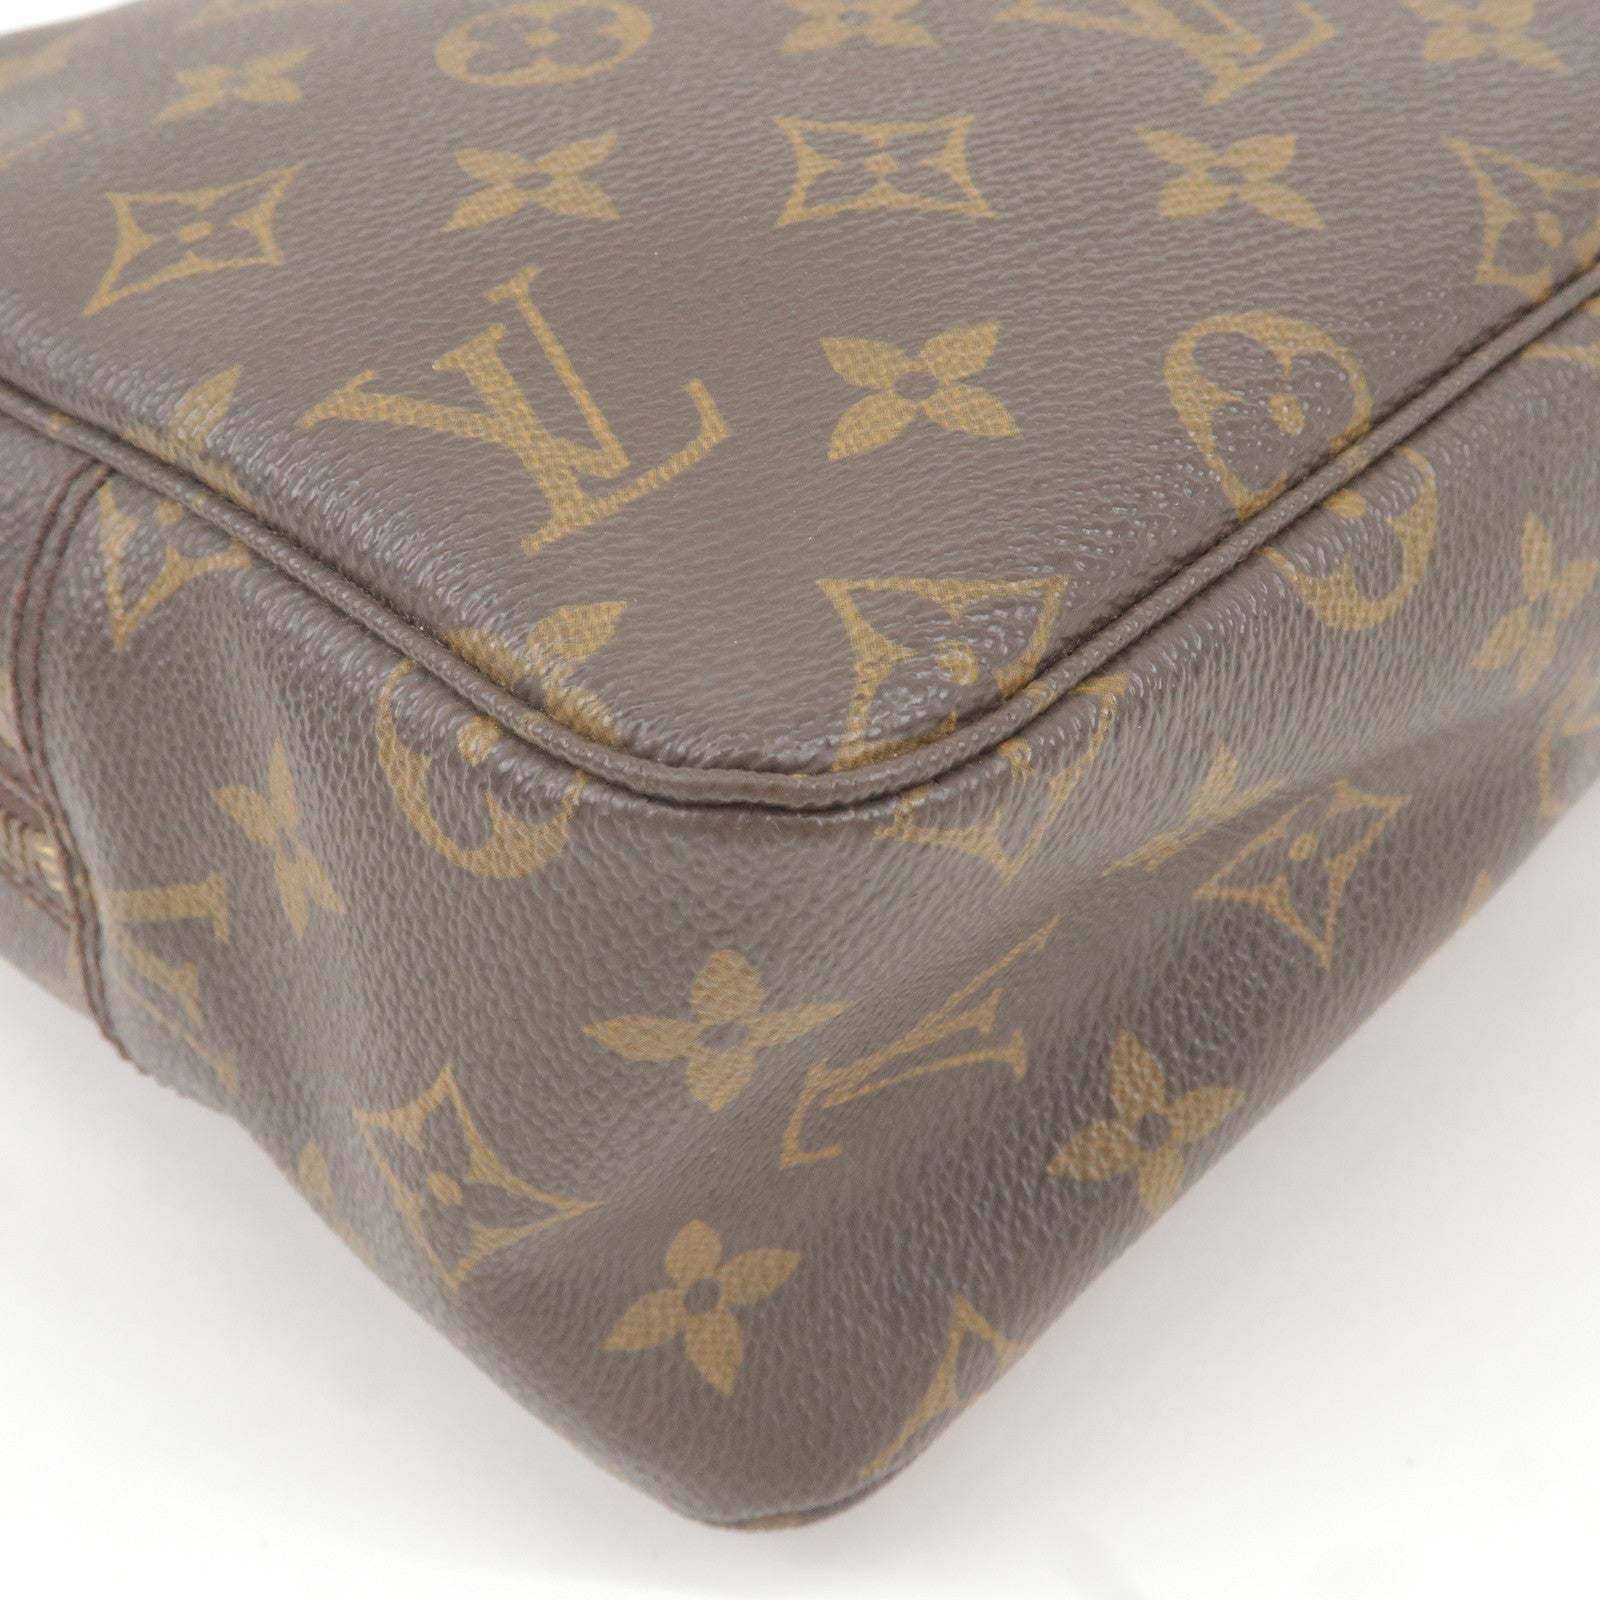 Louis Vuitton Clutch Bag Pouch Trousse Toilette 28 M47522 Monogram